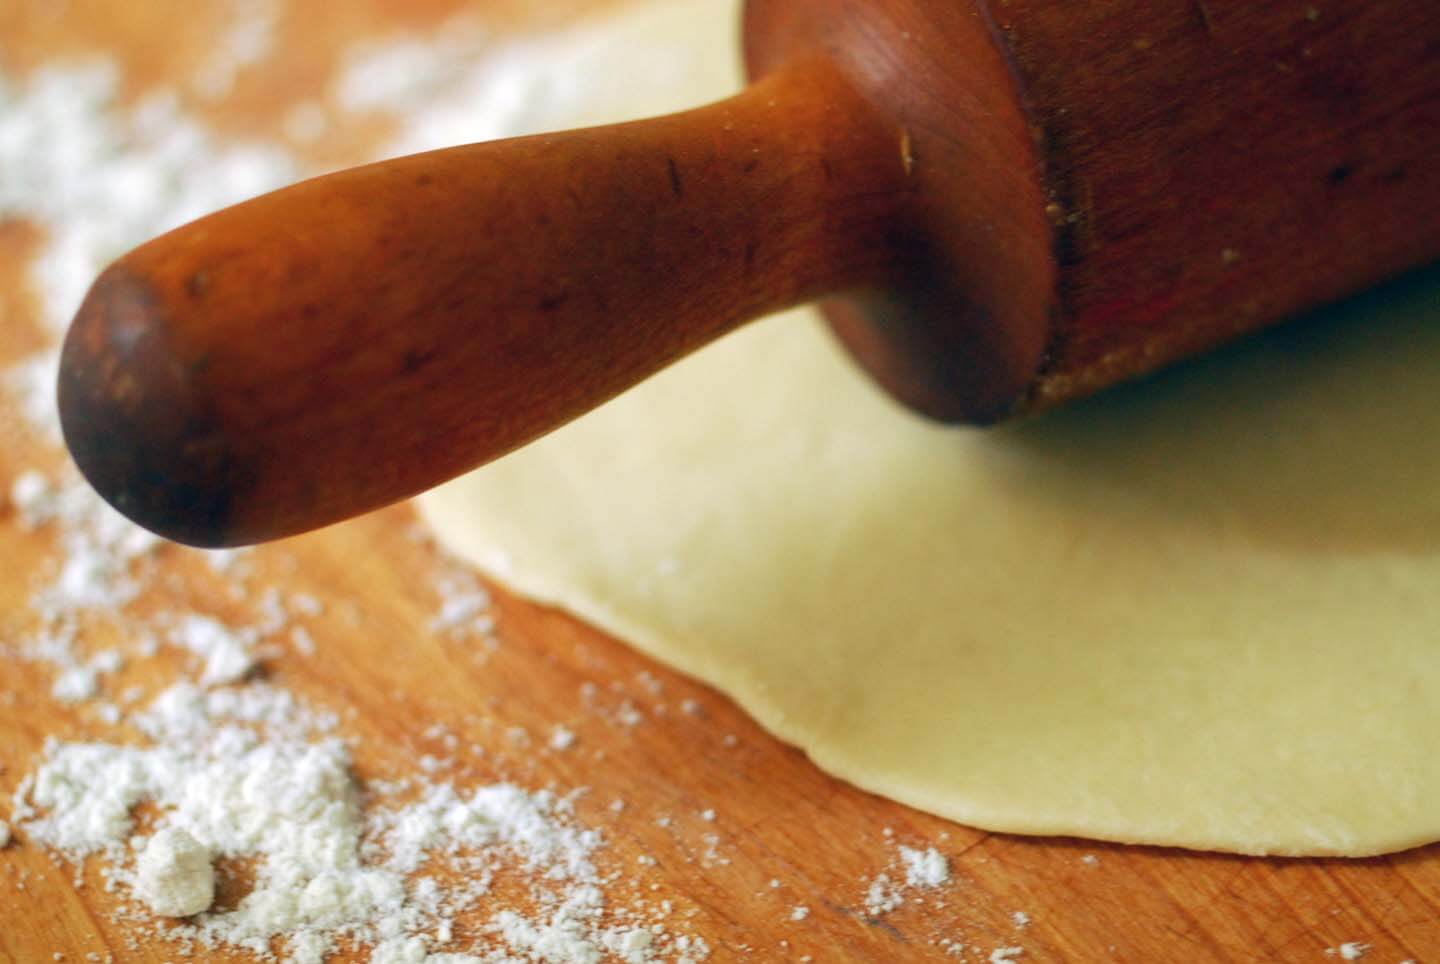 Flour tortillas | Homesick Texan